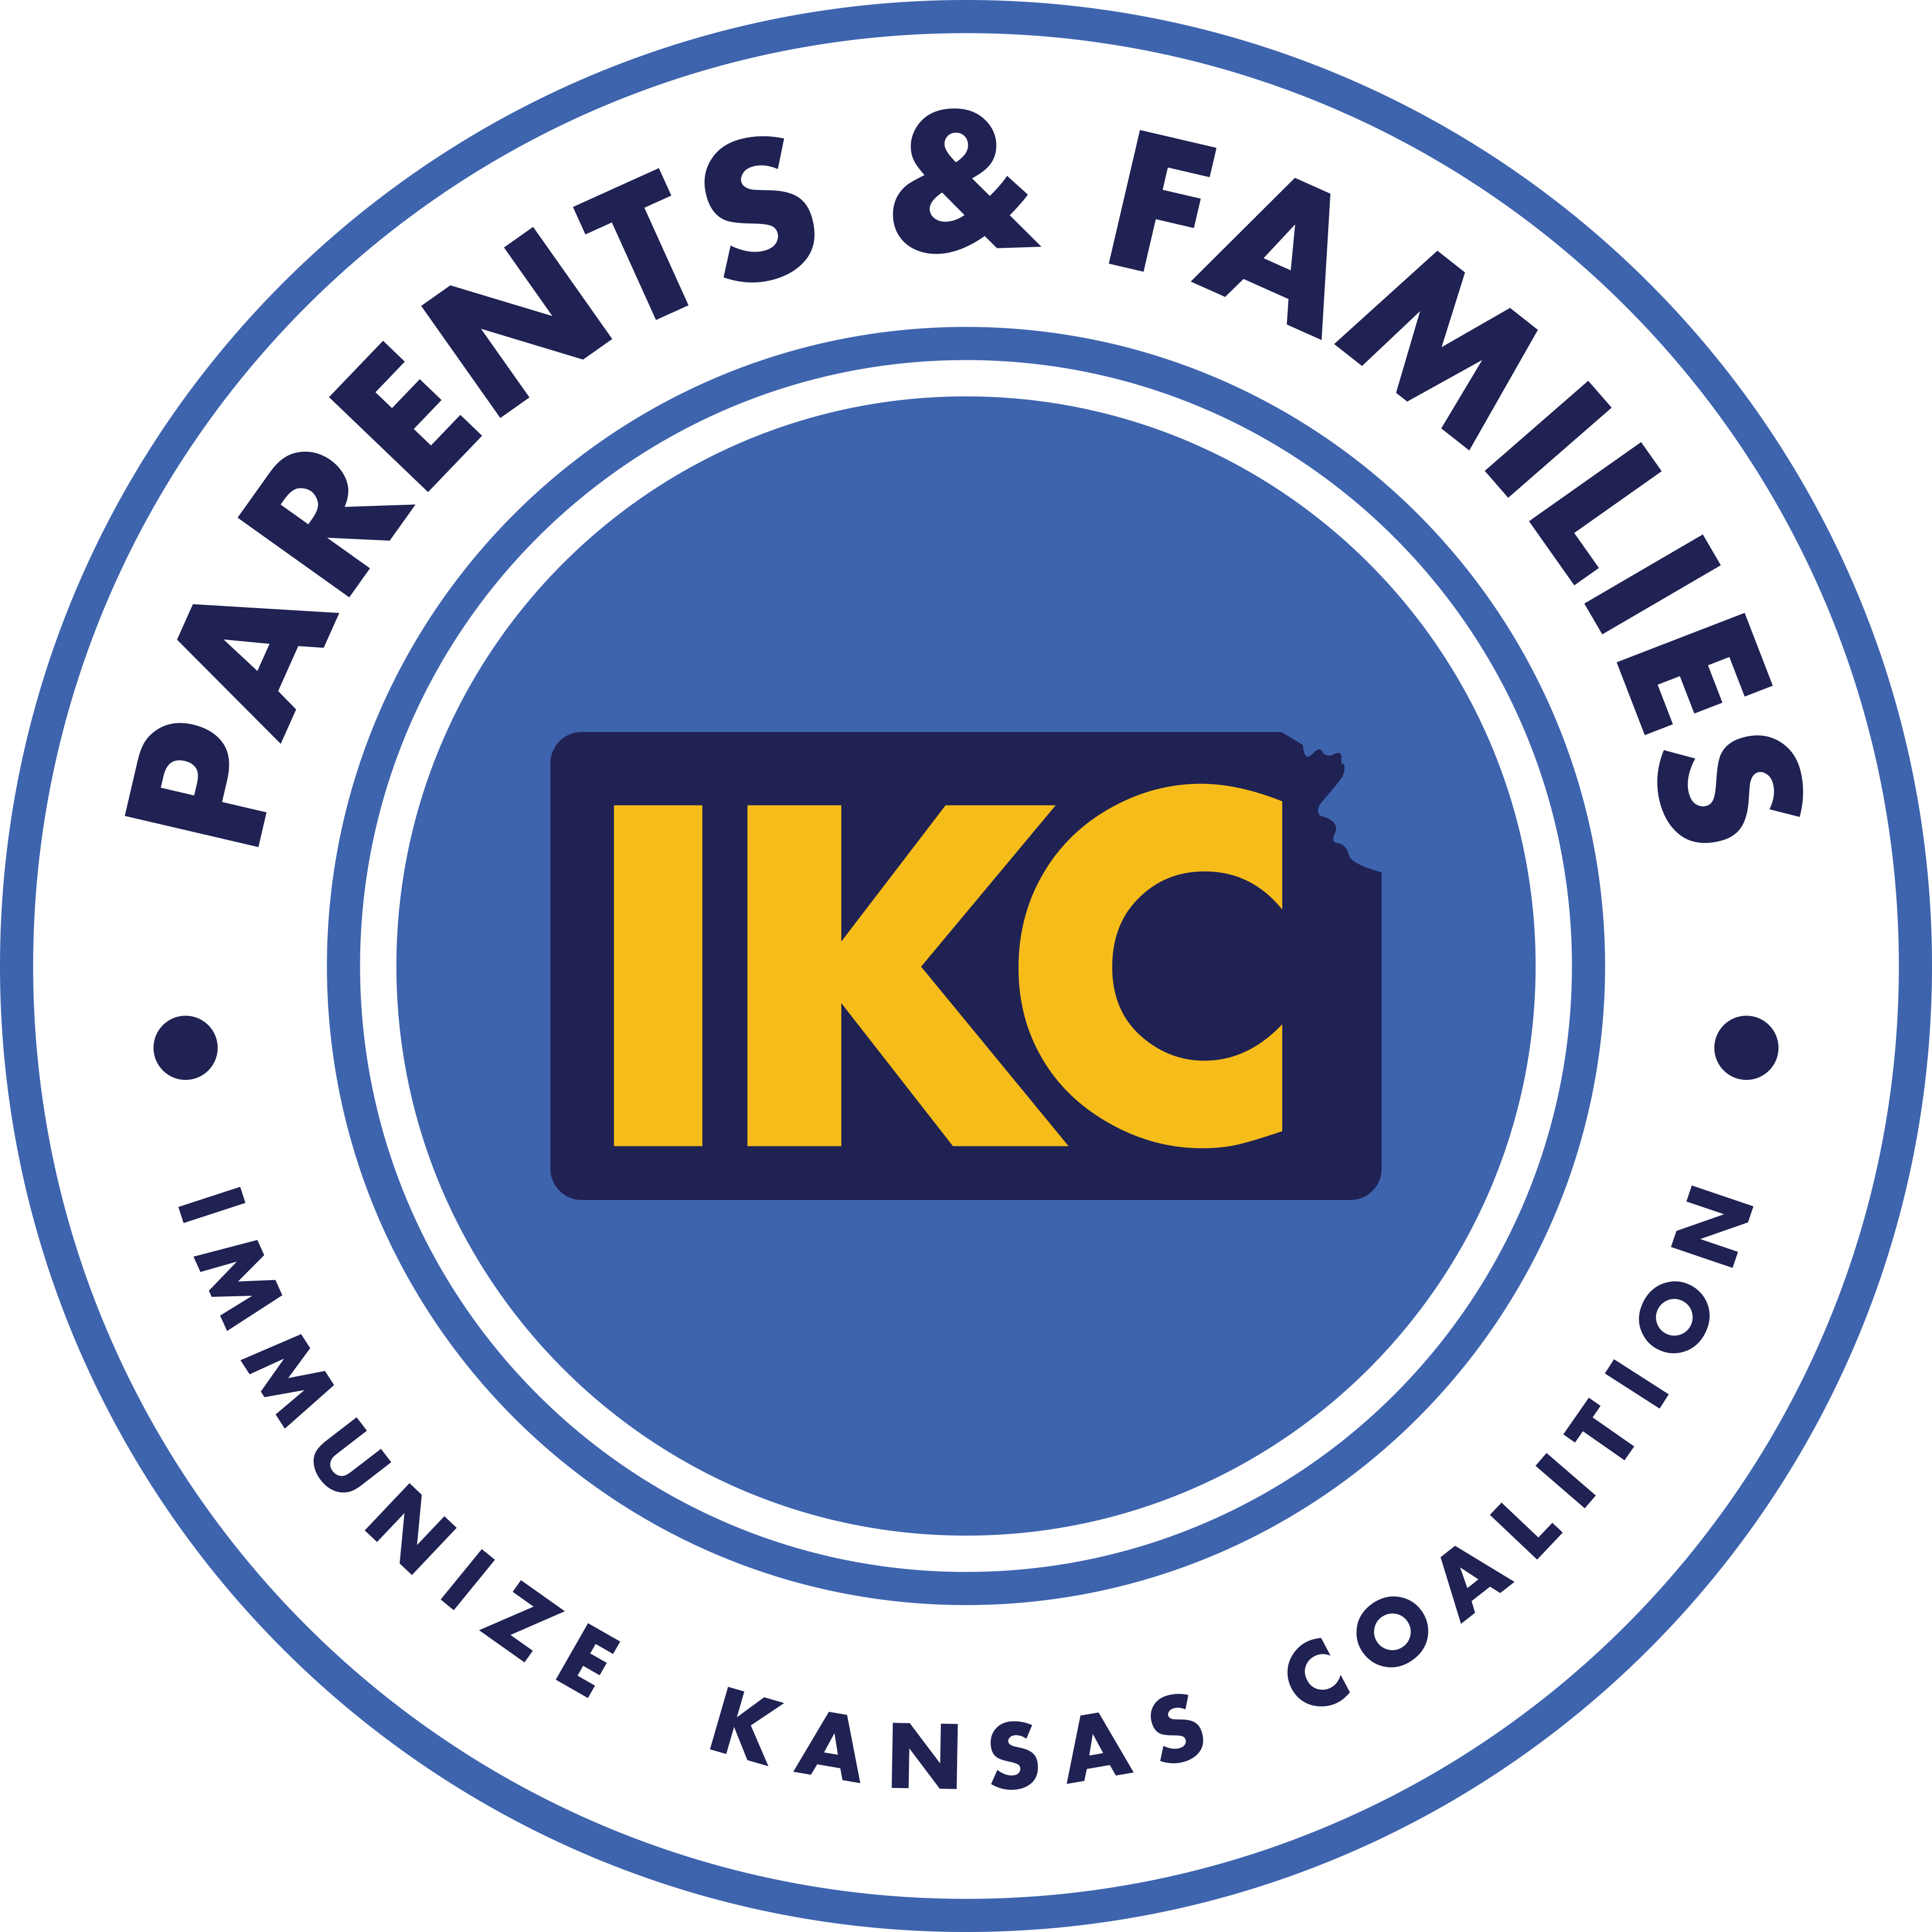 IKC Parent Group Interest Survey